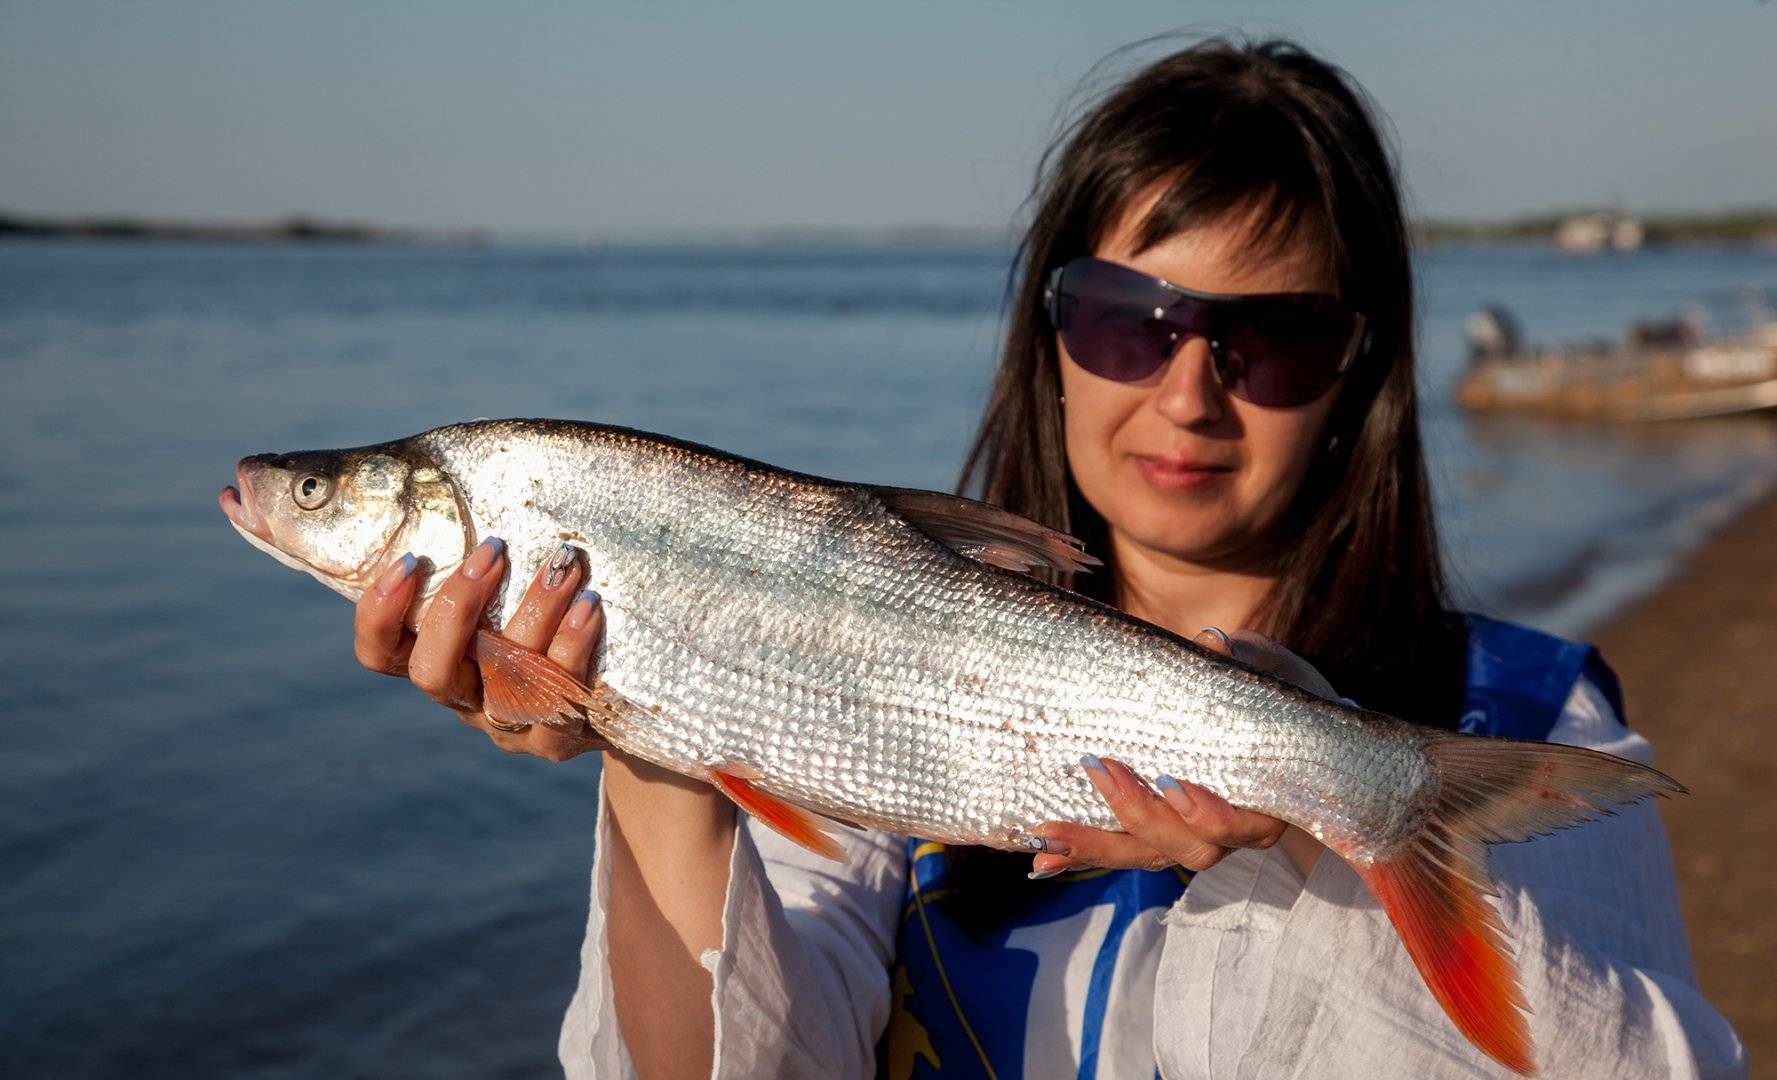 Нельма фото и описание – каталог рыб, смотреть онлайн